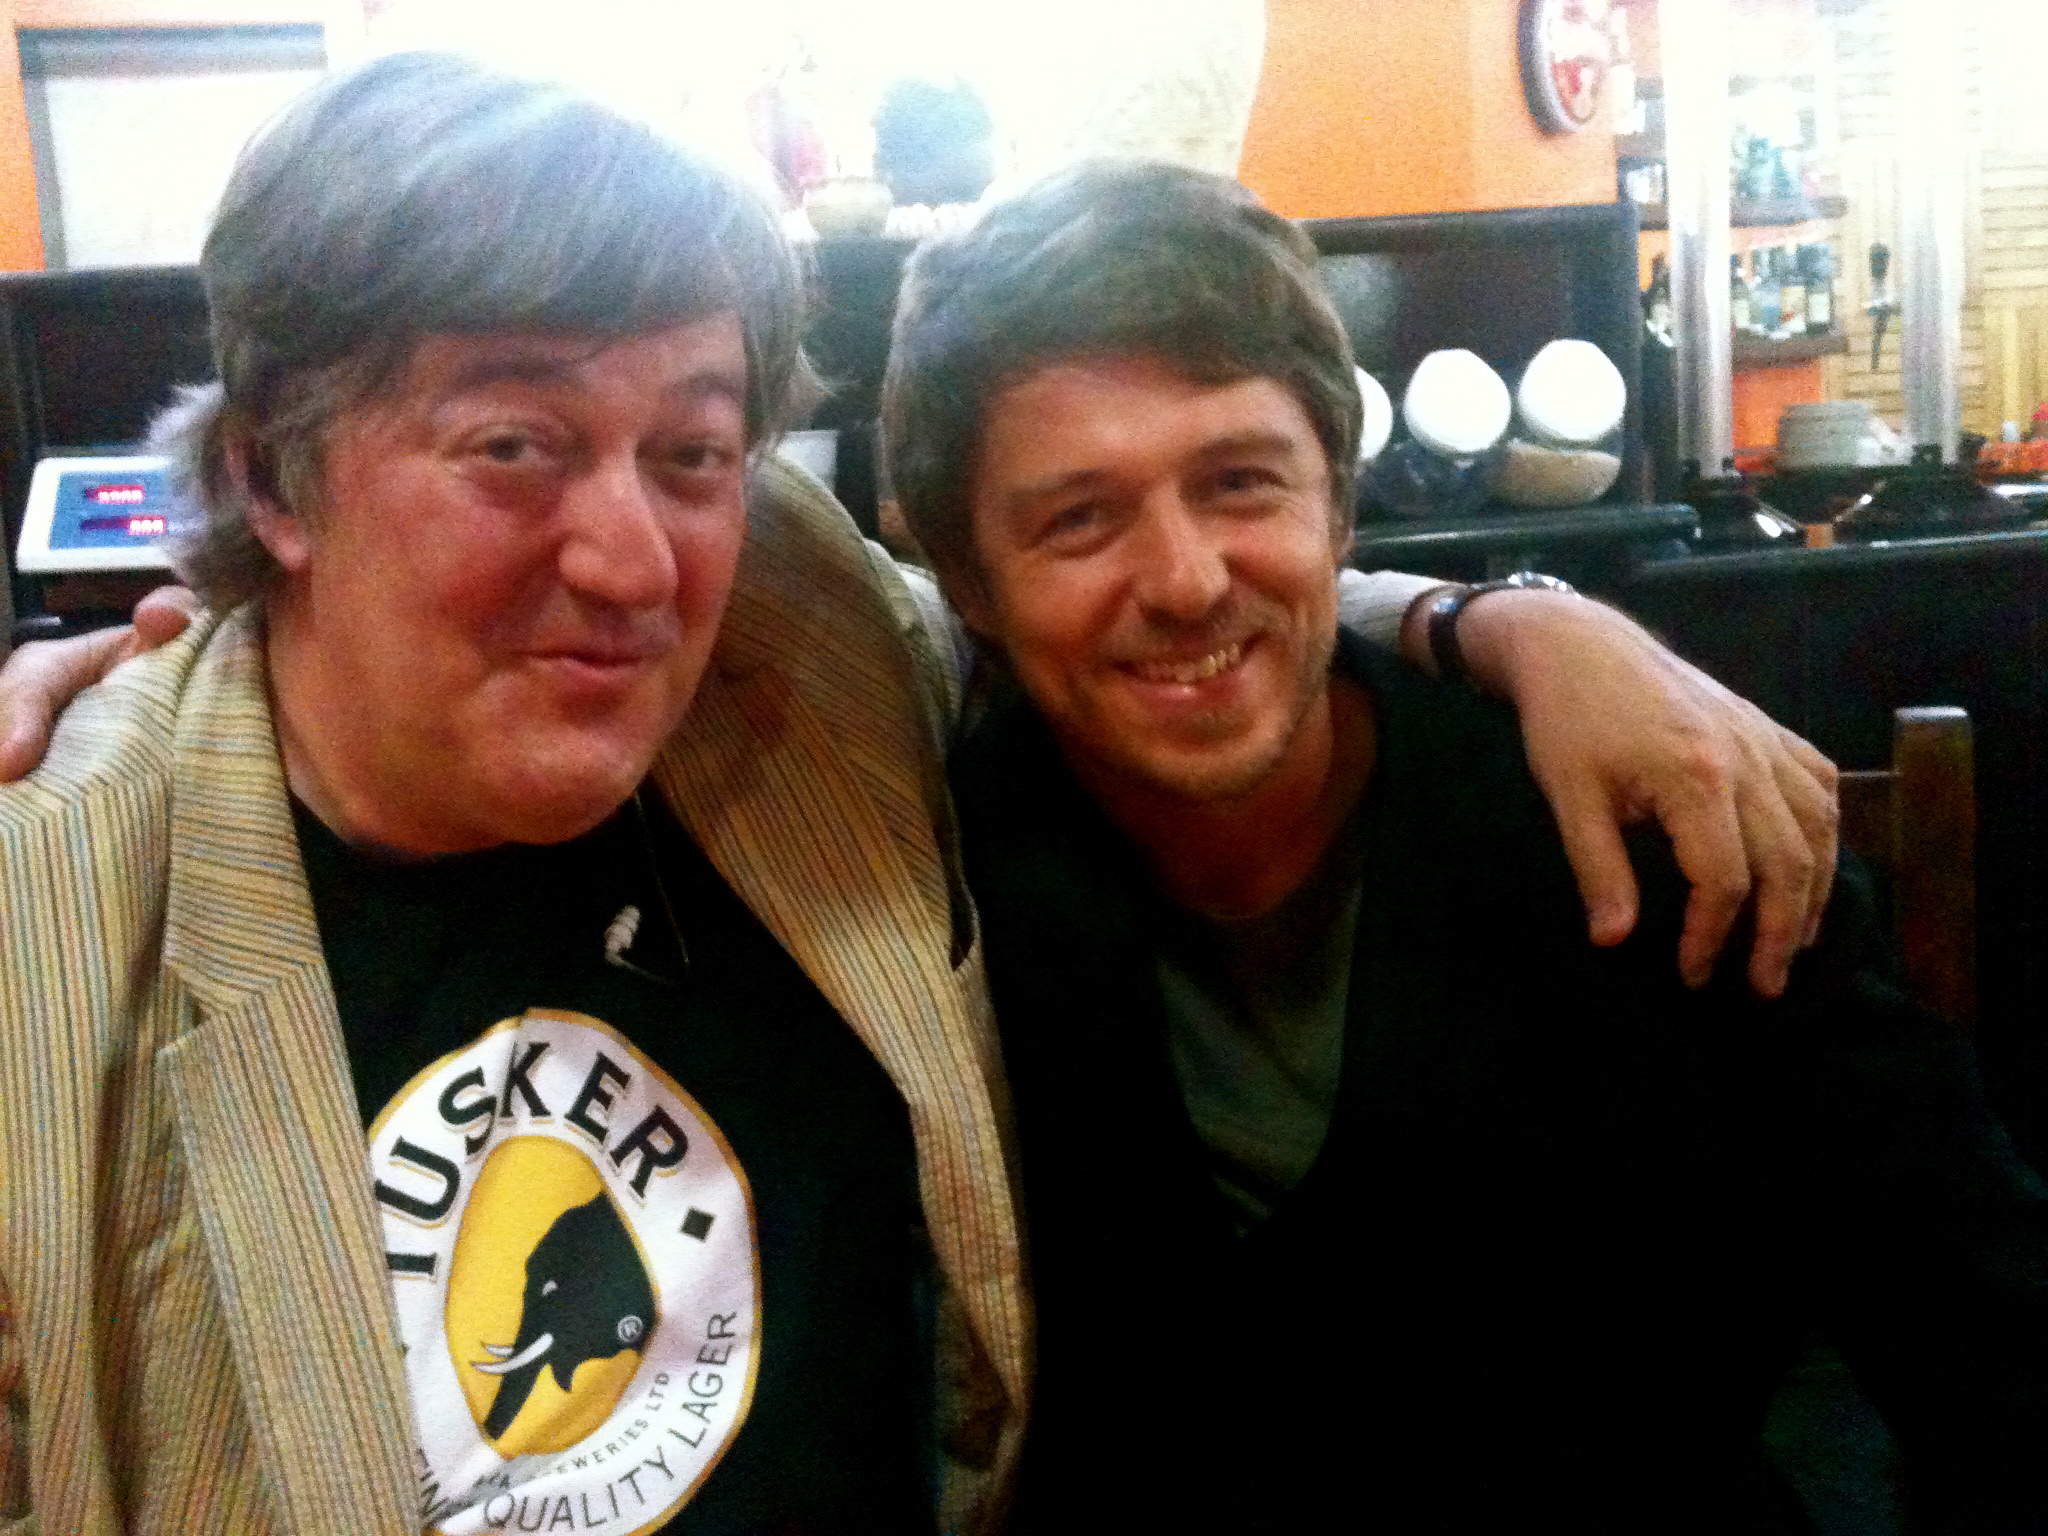 With Stephen Fry - Rio de Janeiro - for the BBC. 2012.